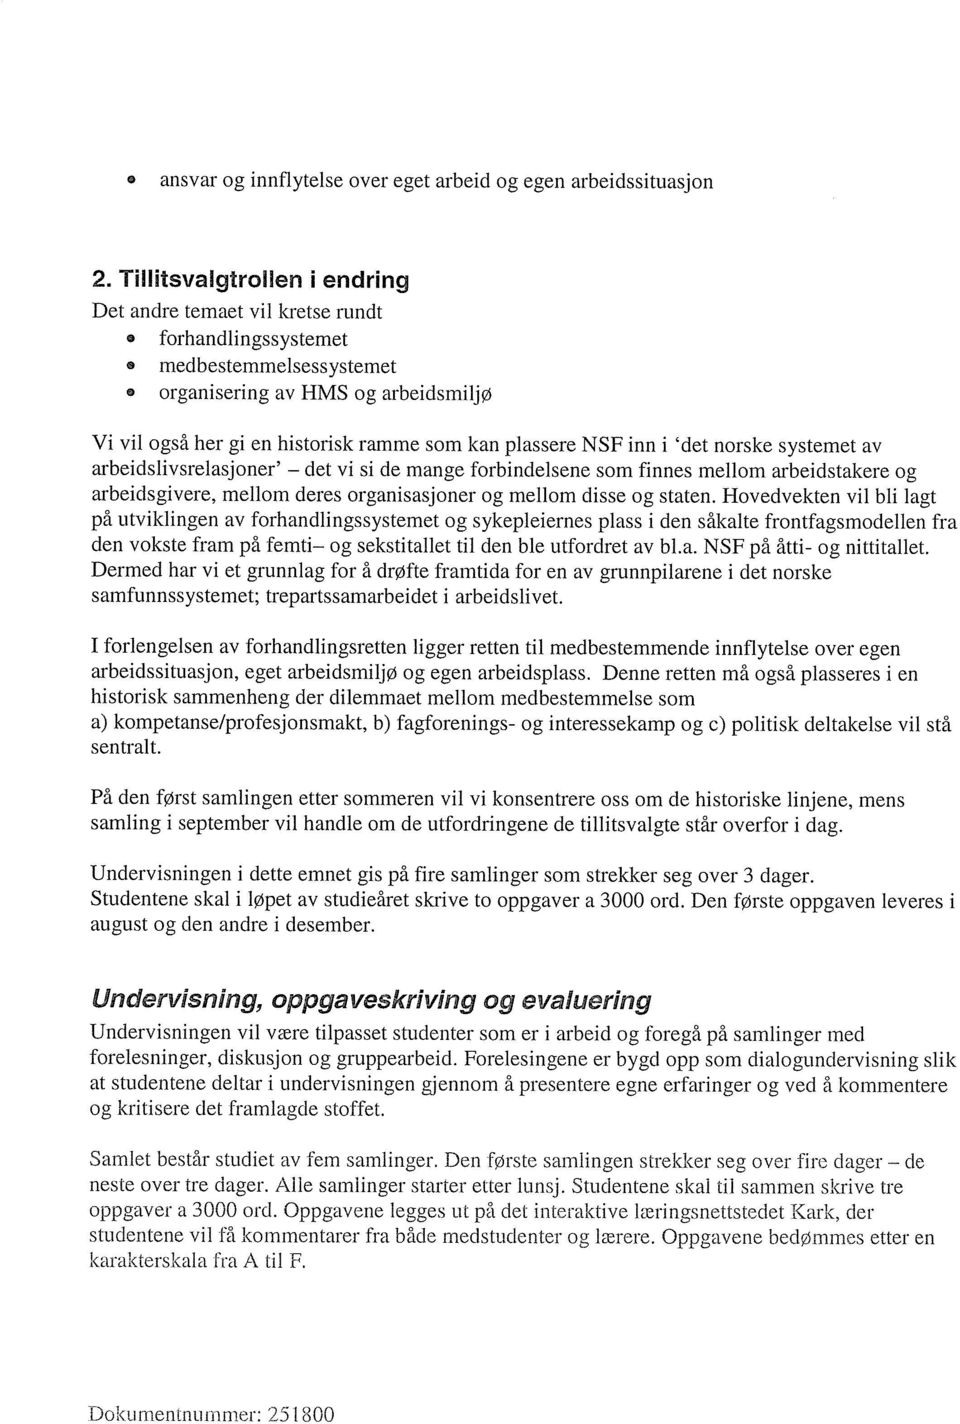 NSF inn i `det norske systemet av arbeidslivsrelasjoner' - det vi si de mange forbindelsene som finnes mellom arbeidstakere og arbeidsgivere, mellom deres organisasjoner og mellom disse og staten.